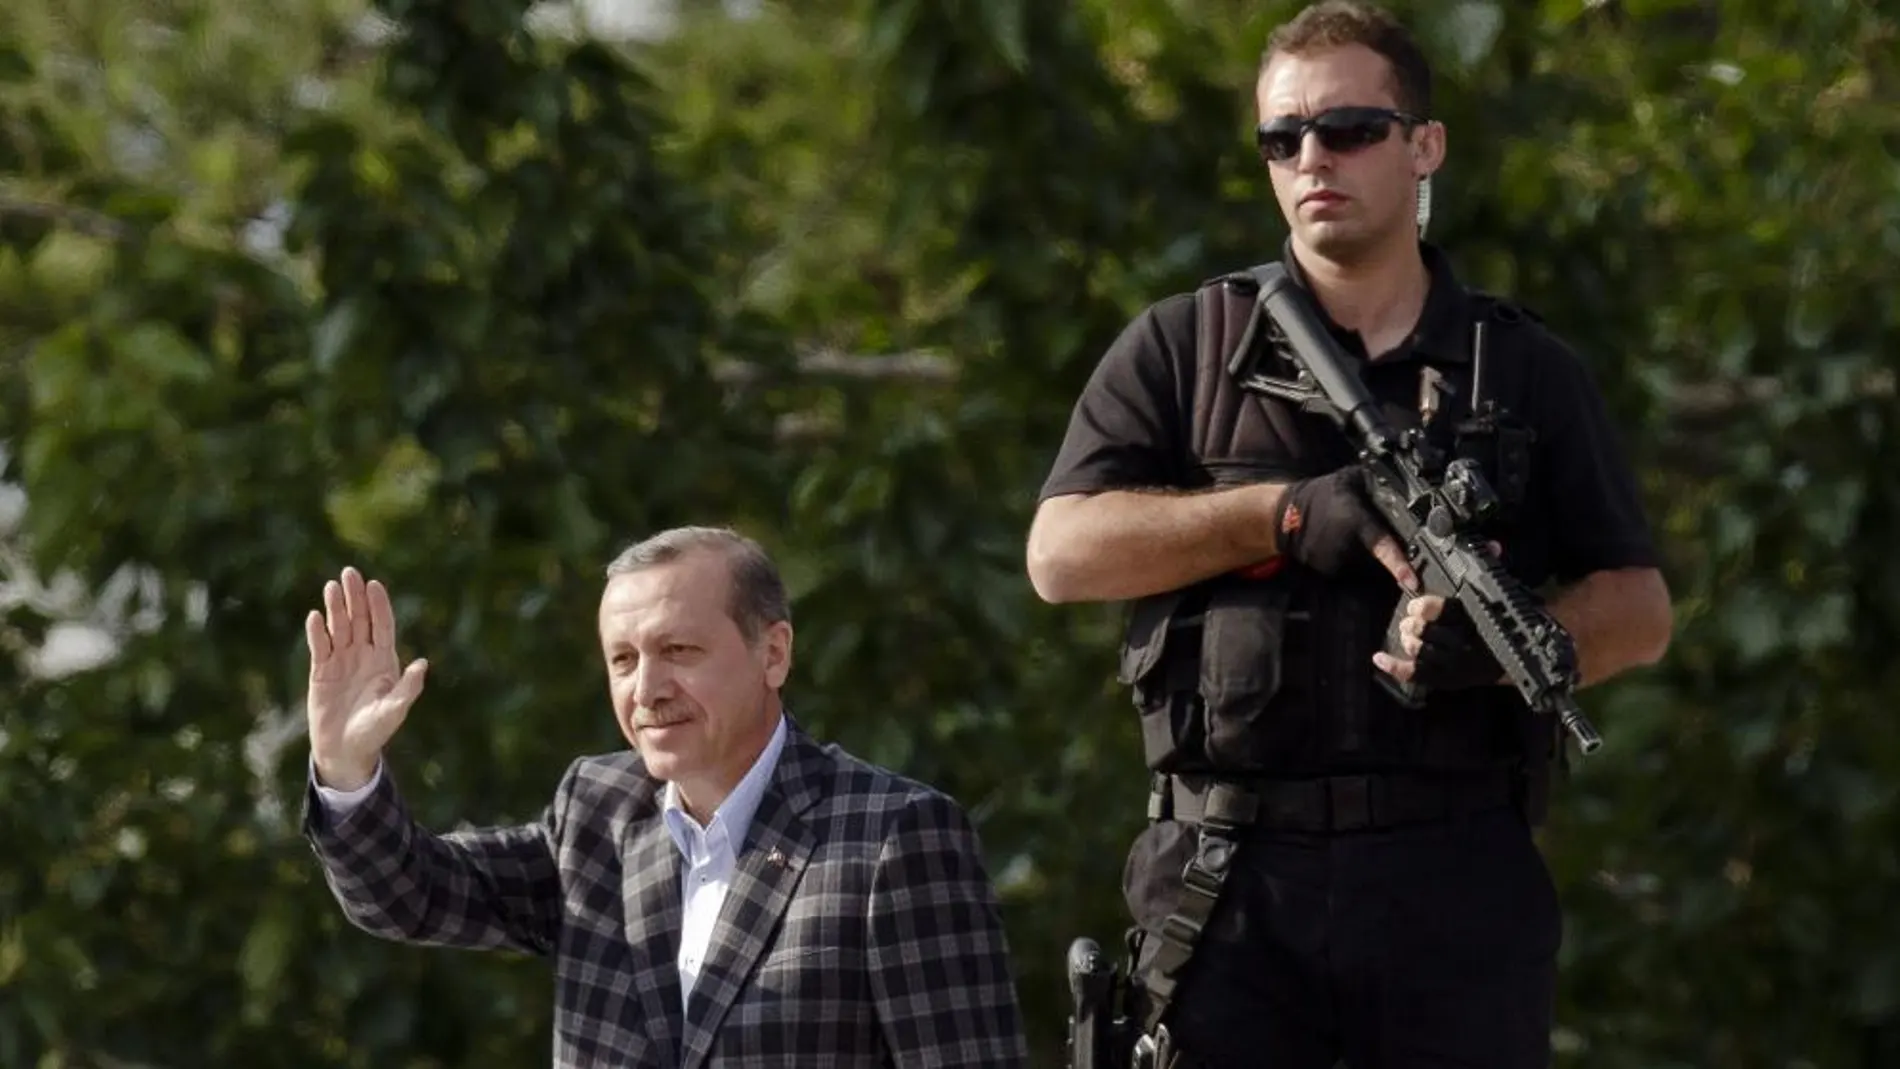 El primer ministro turco Tayyip Erdogan saludo a sus seguidores en Ankara, escoltado por miembros de su seguridad.